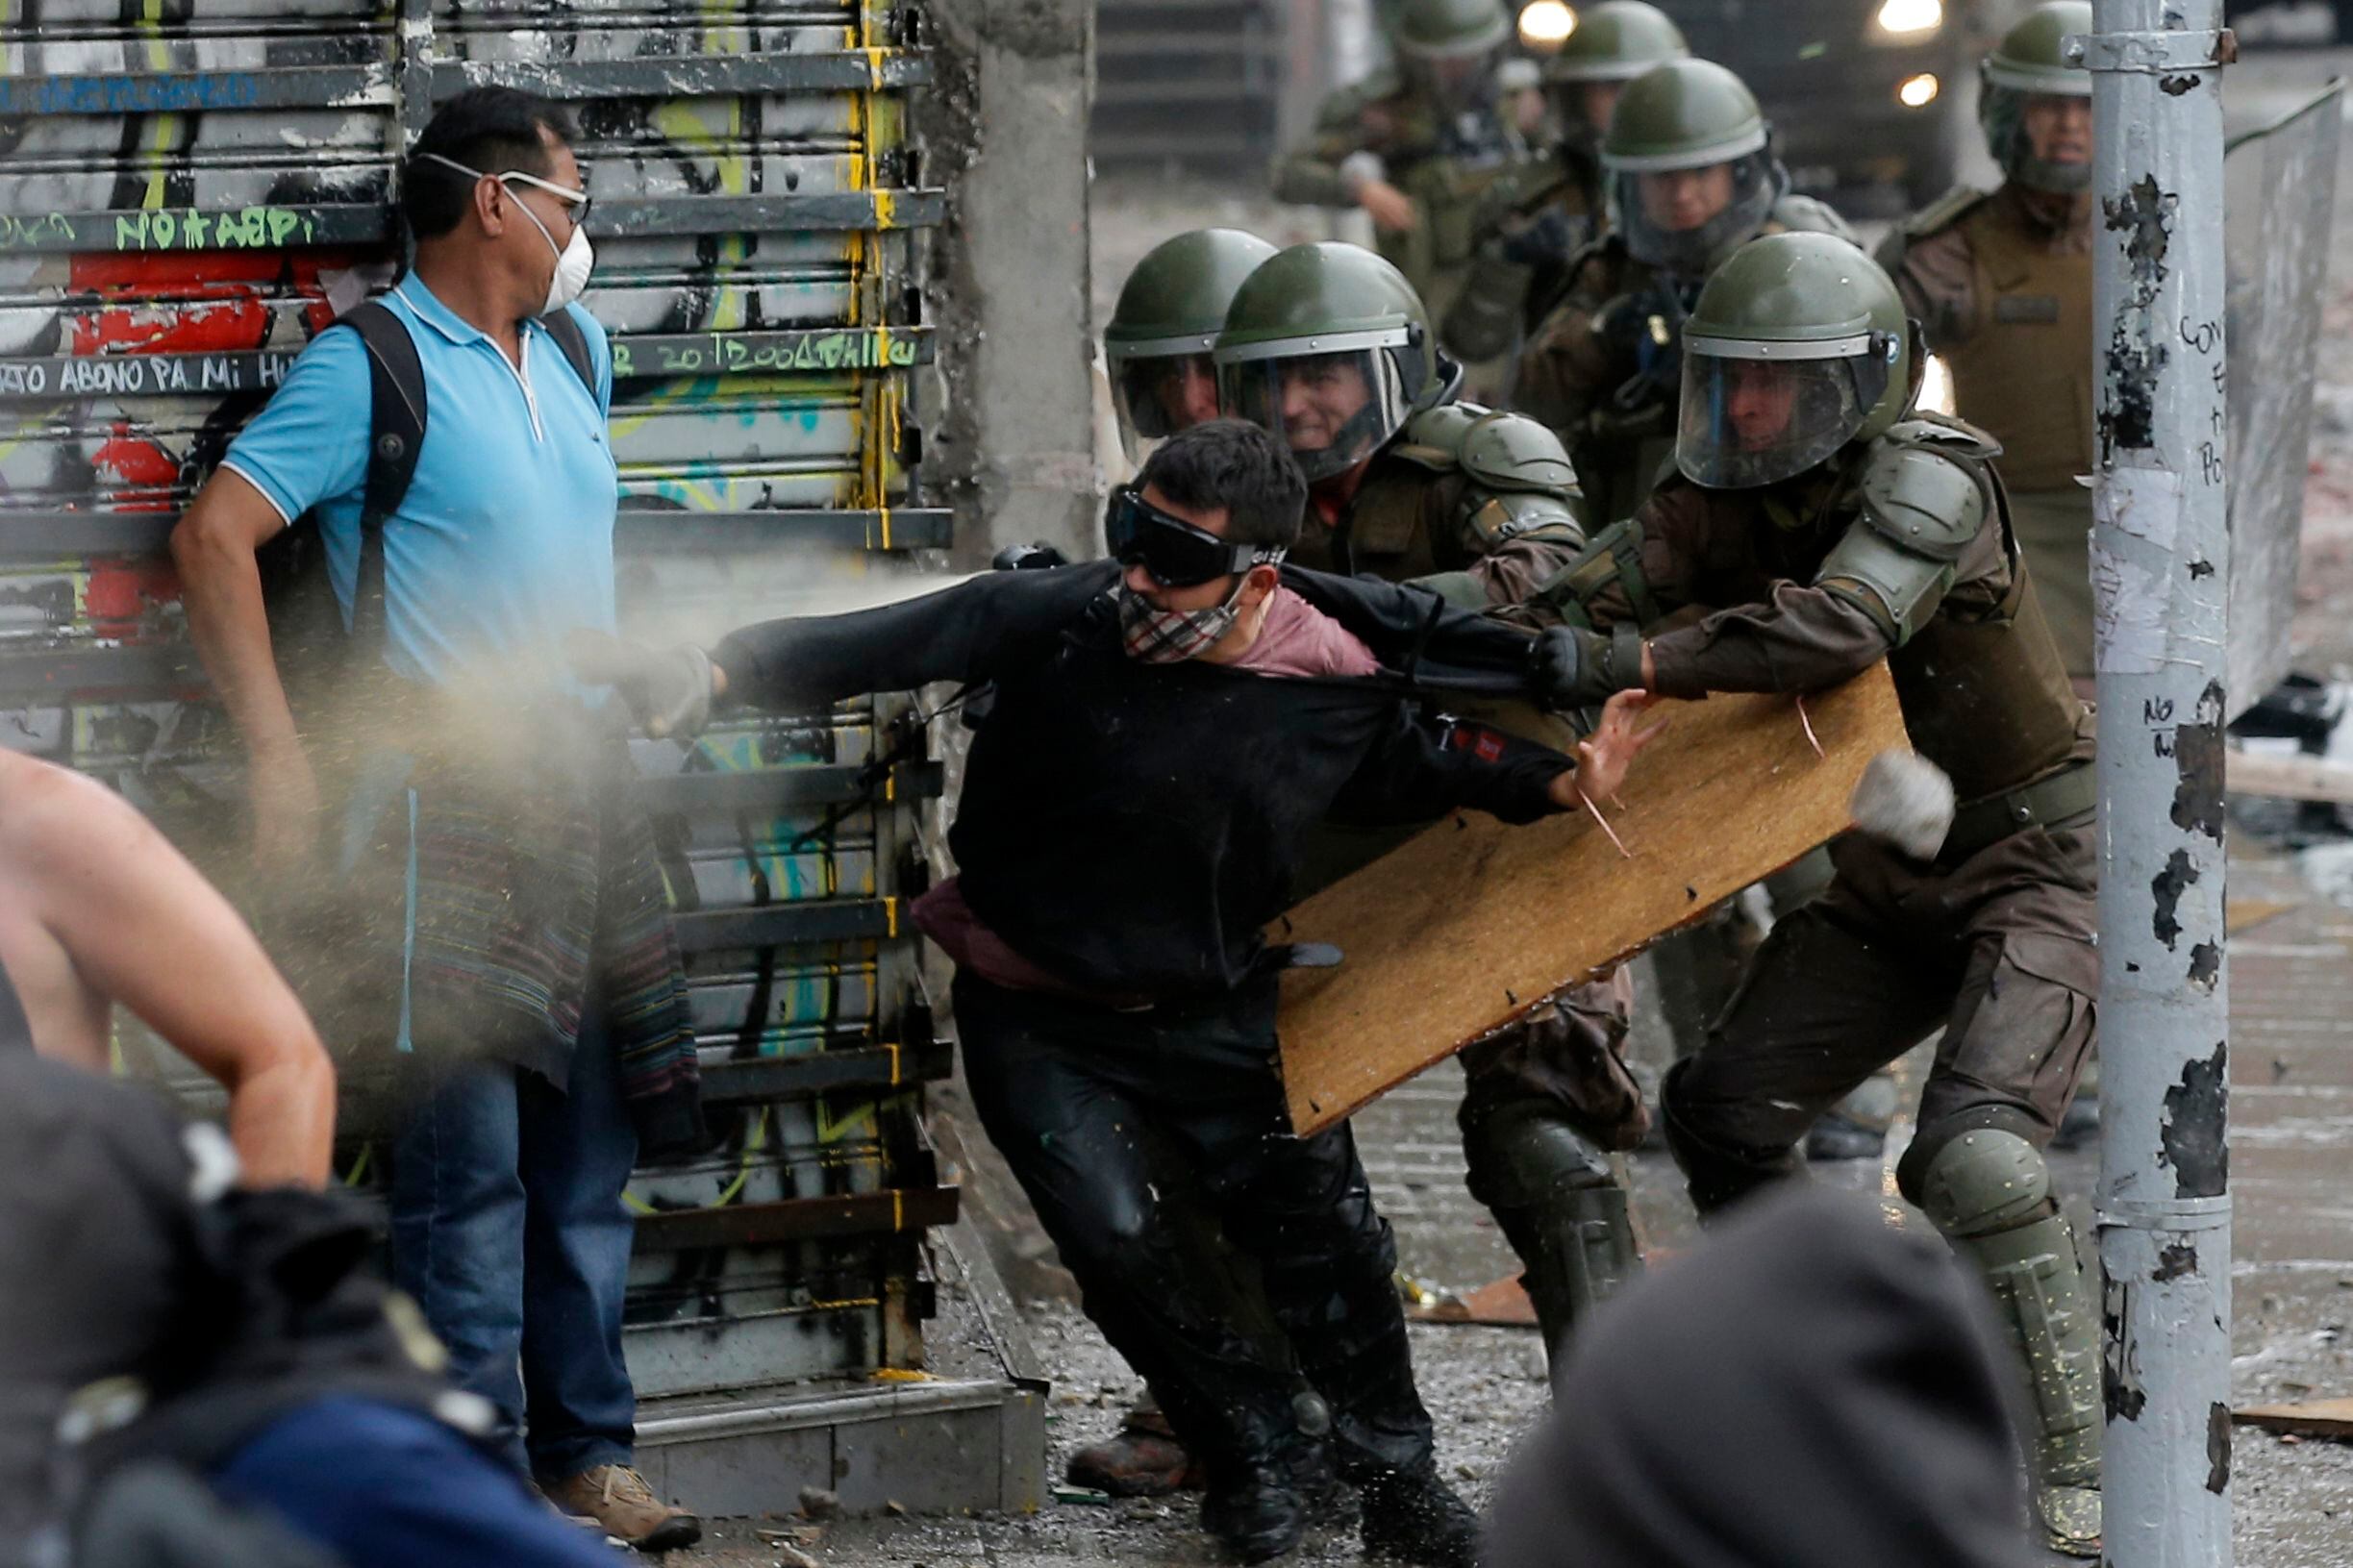 El propio gobierno de Piñera ha reconocido abusos y se ha comprometido a promover una reforma de la policía que, dice, se ha visto sobrepasada por la magnitud de las protestas. (Foto: AFP)